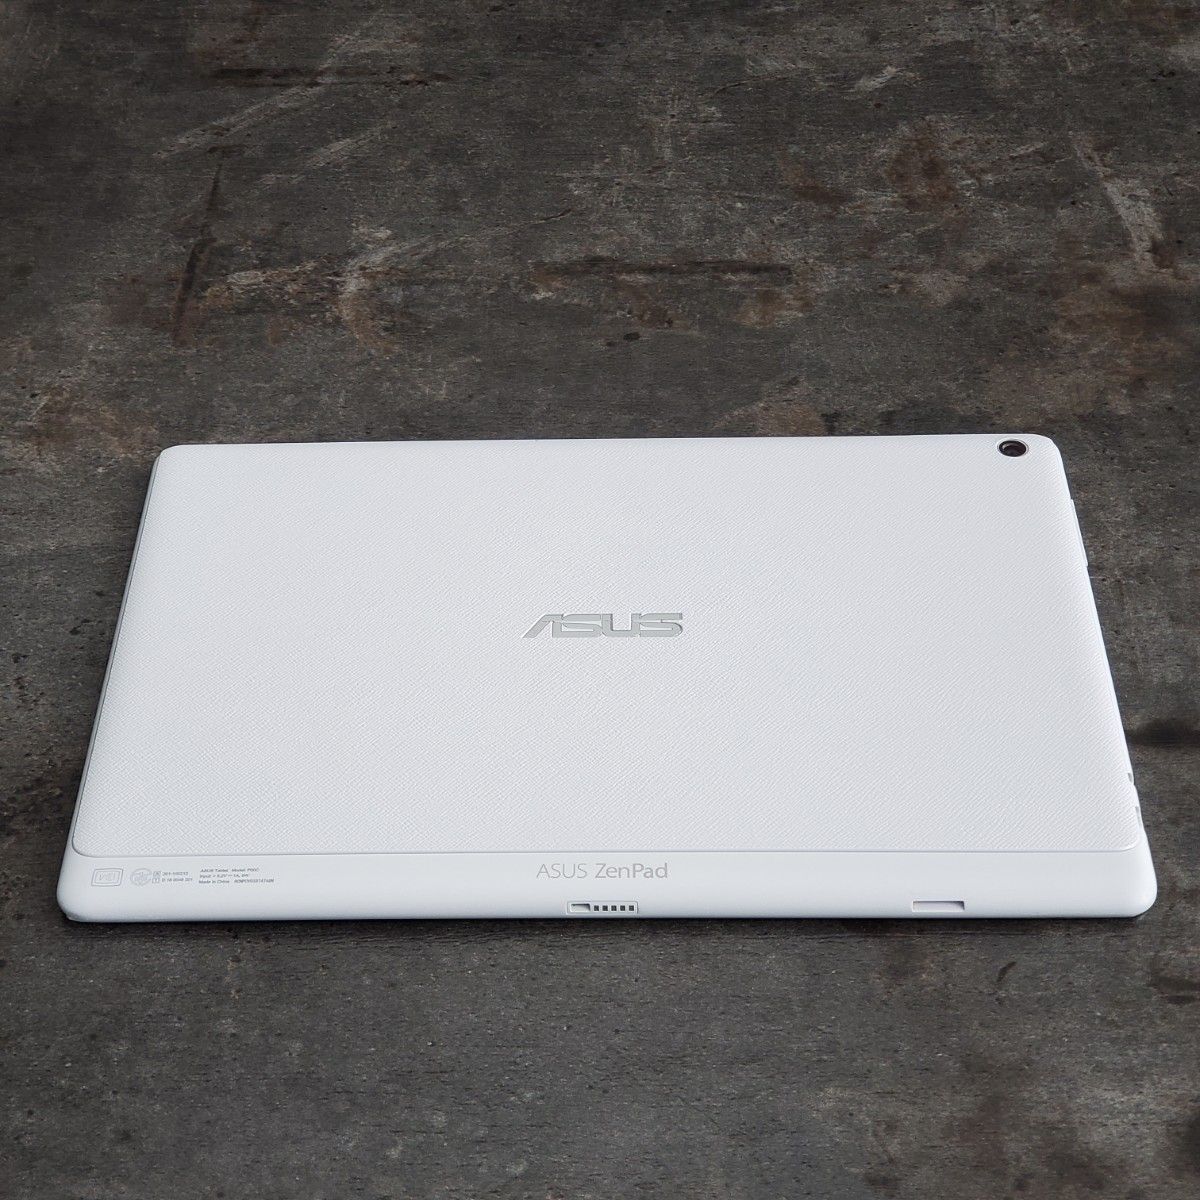 【ジャンク品】ASUS ZenPad 10 Z300M-WH16 ホワイト